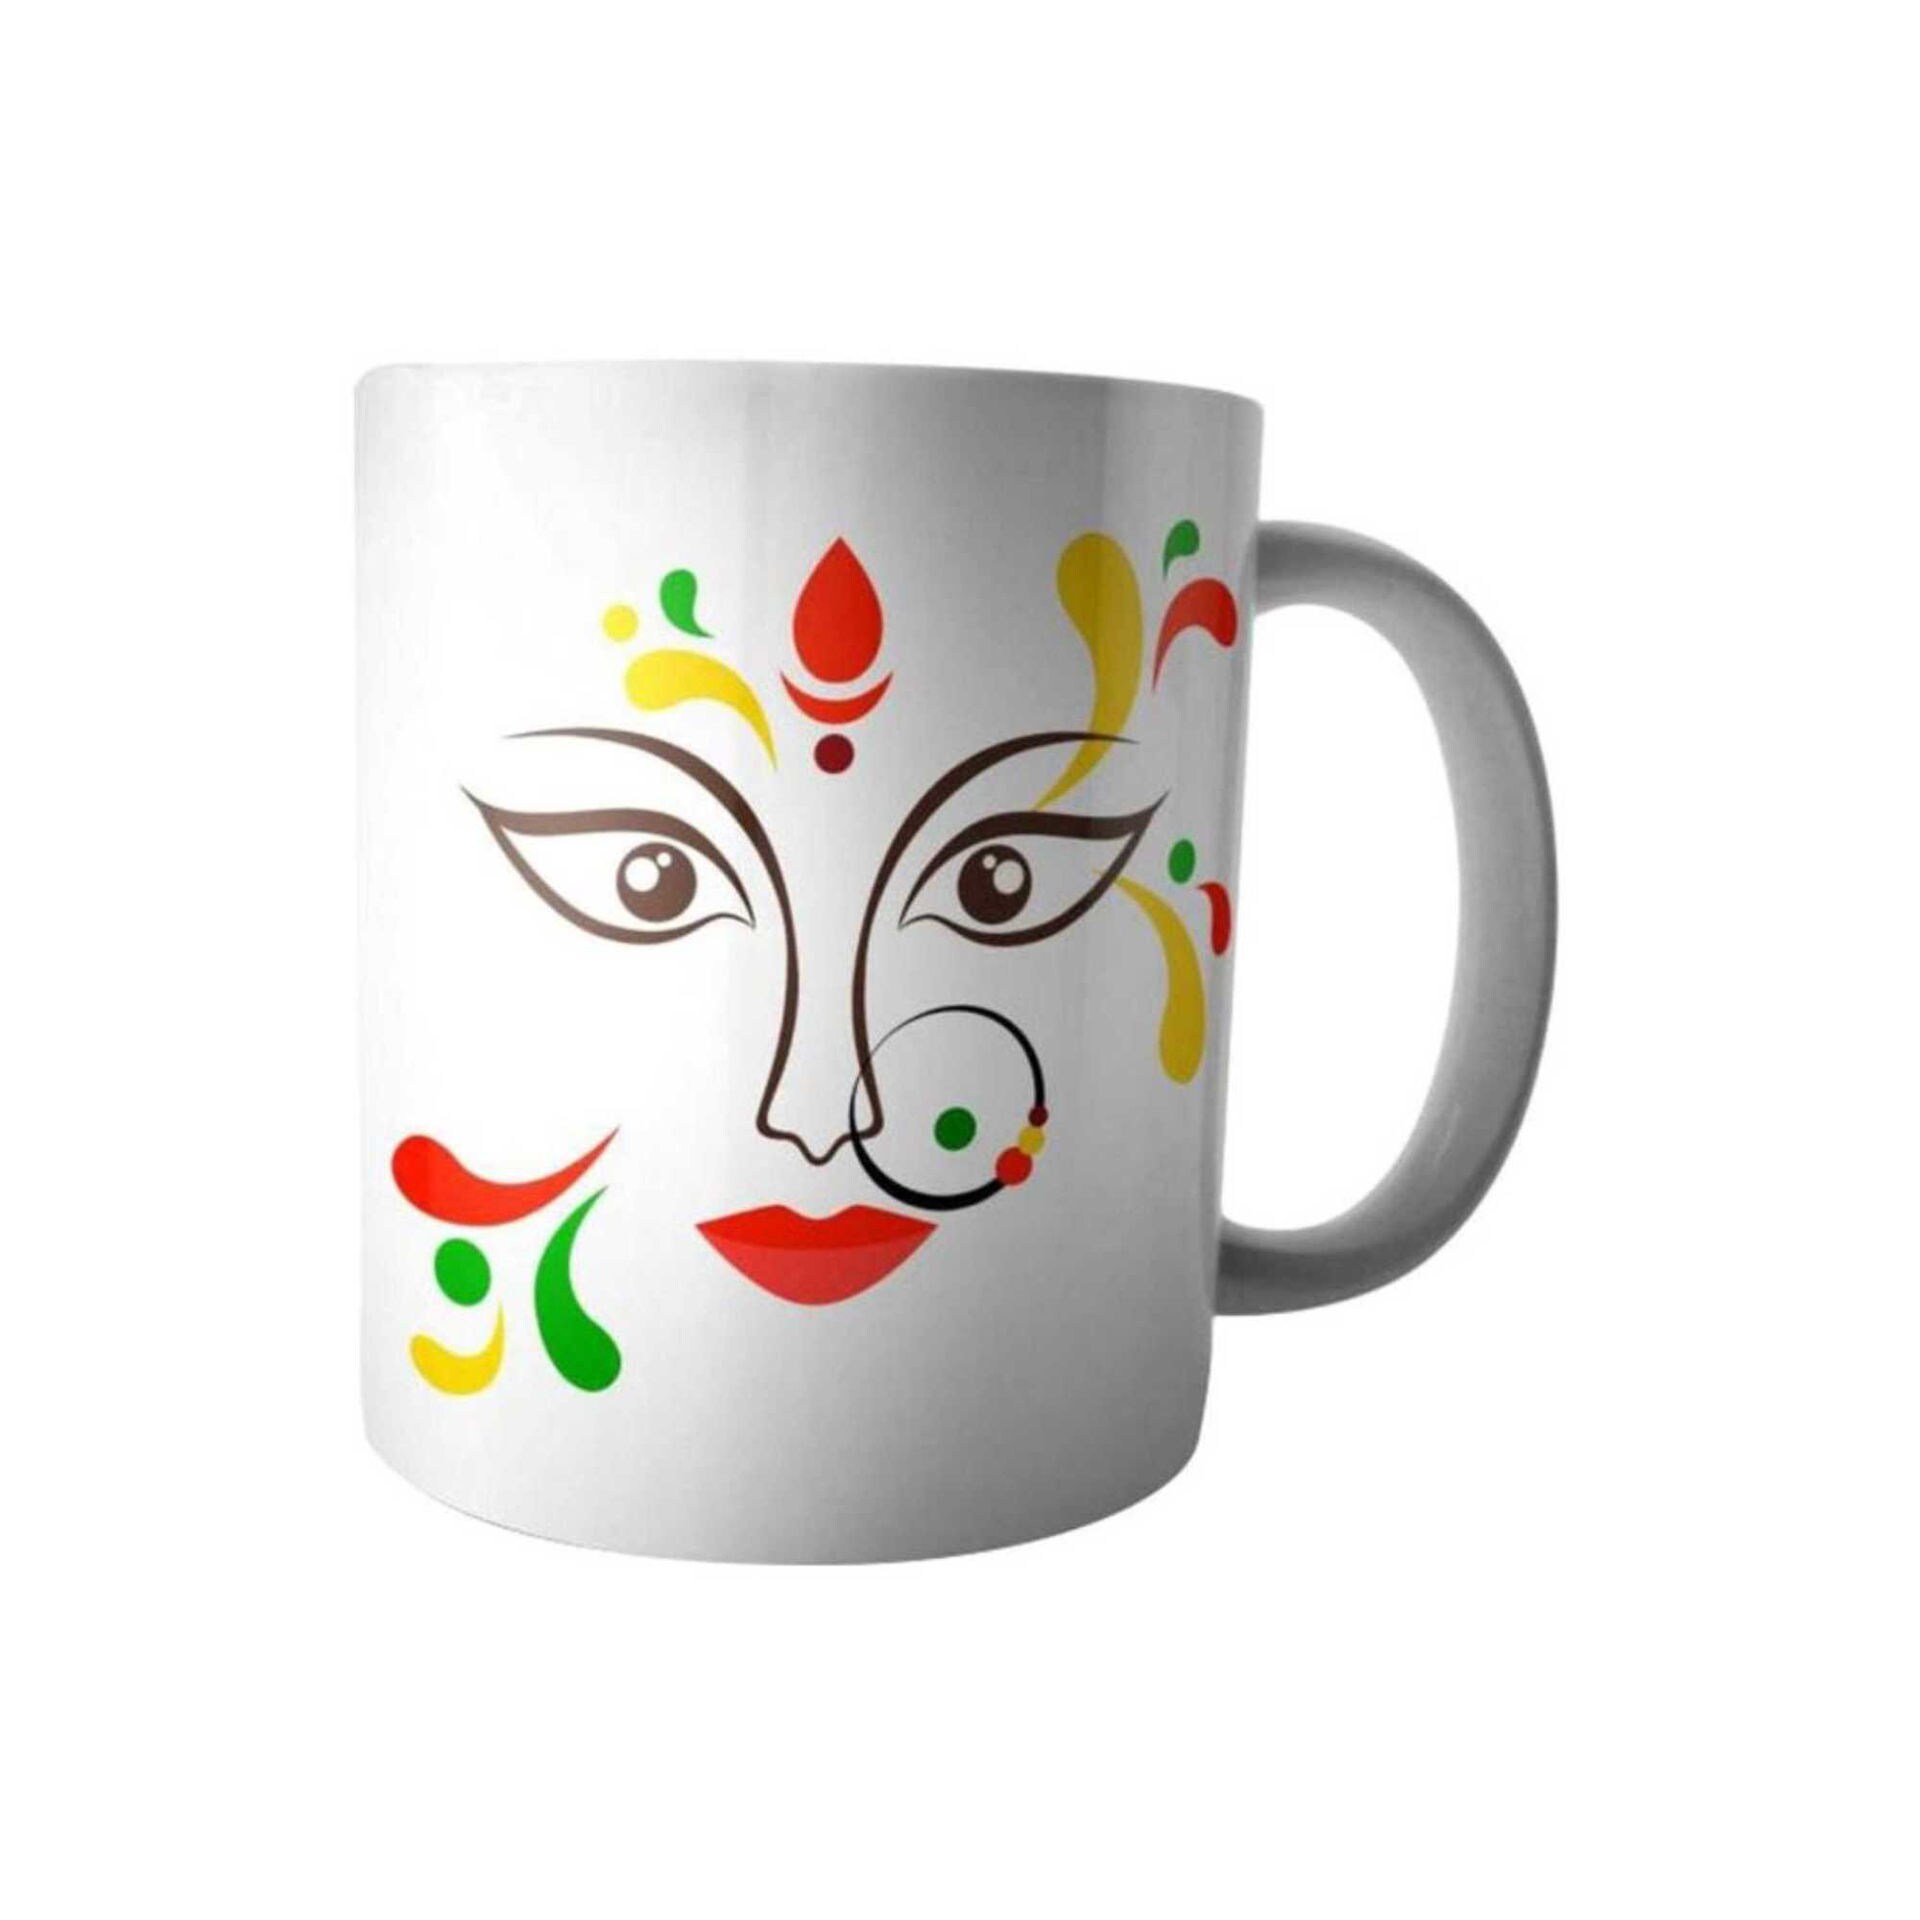 Fast Print Indian Woman Printed Ceramic Mug